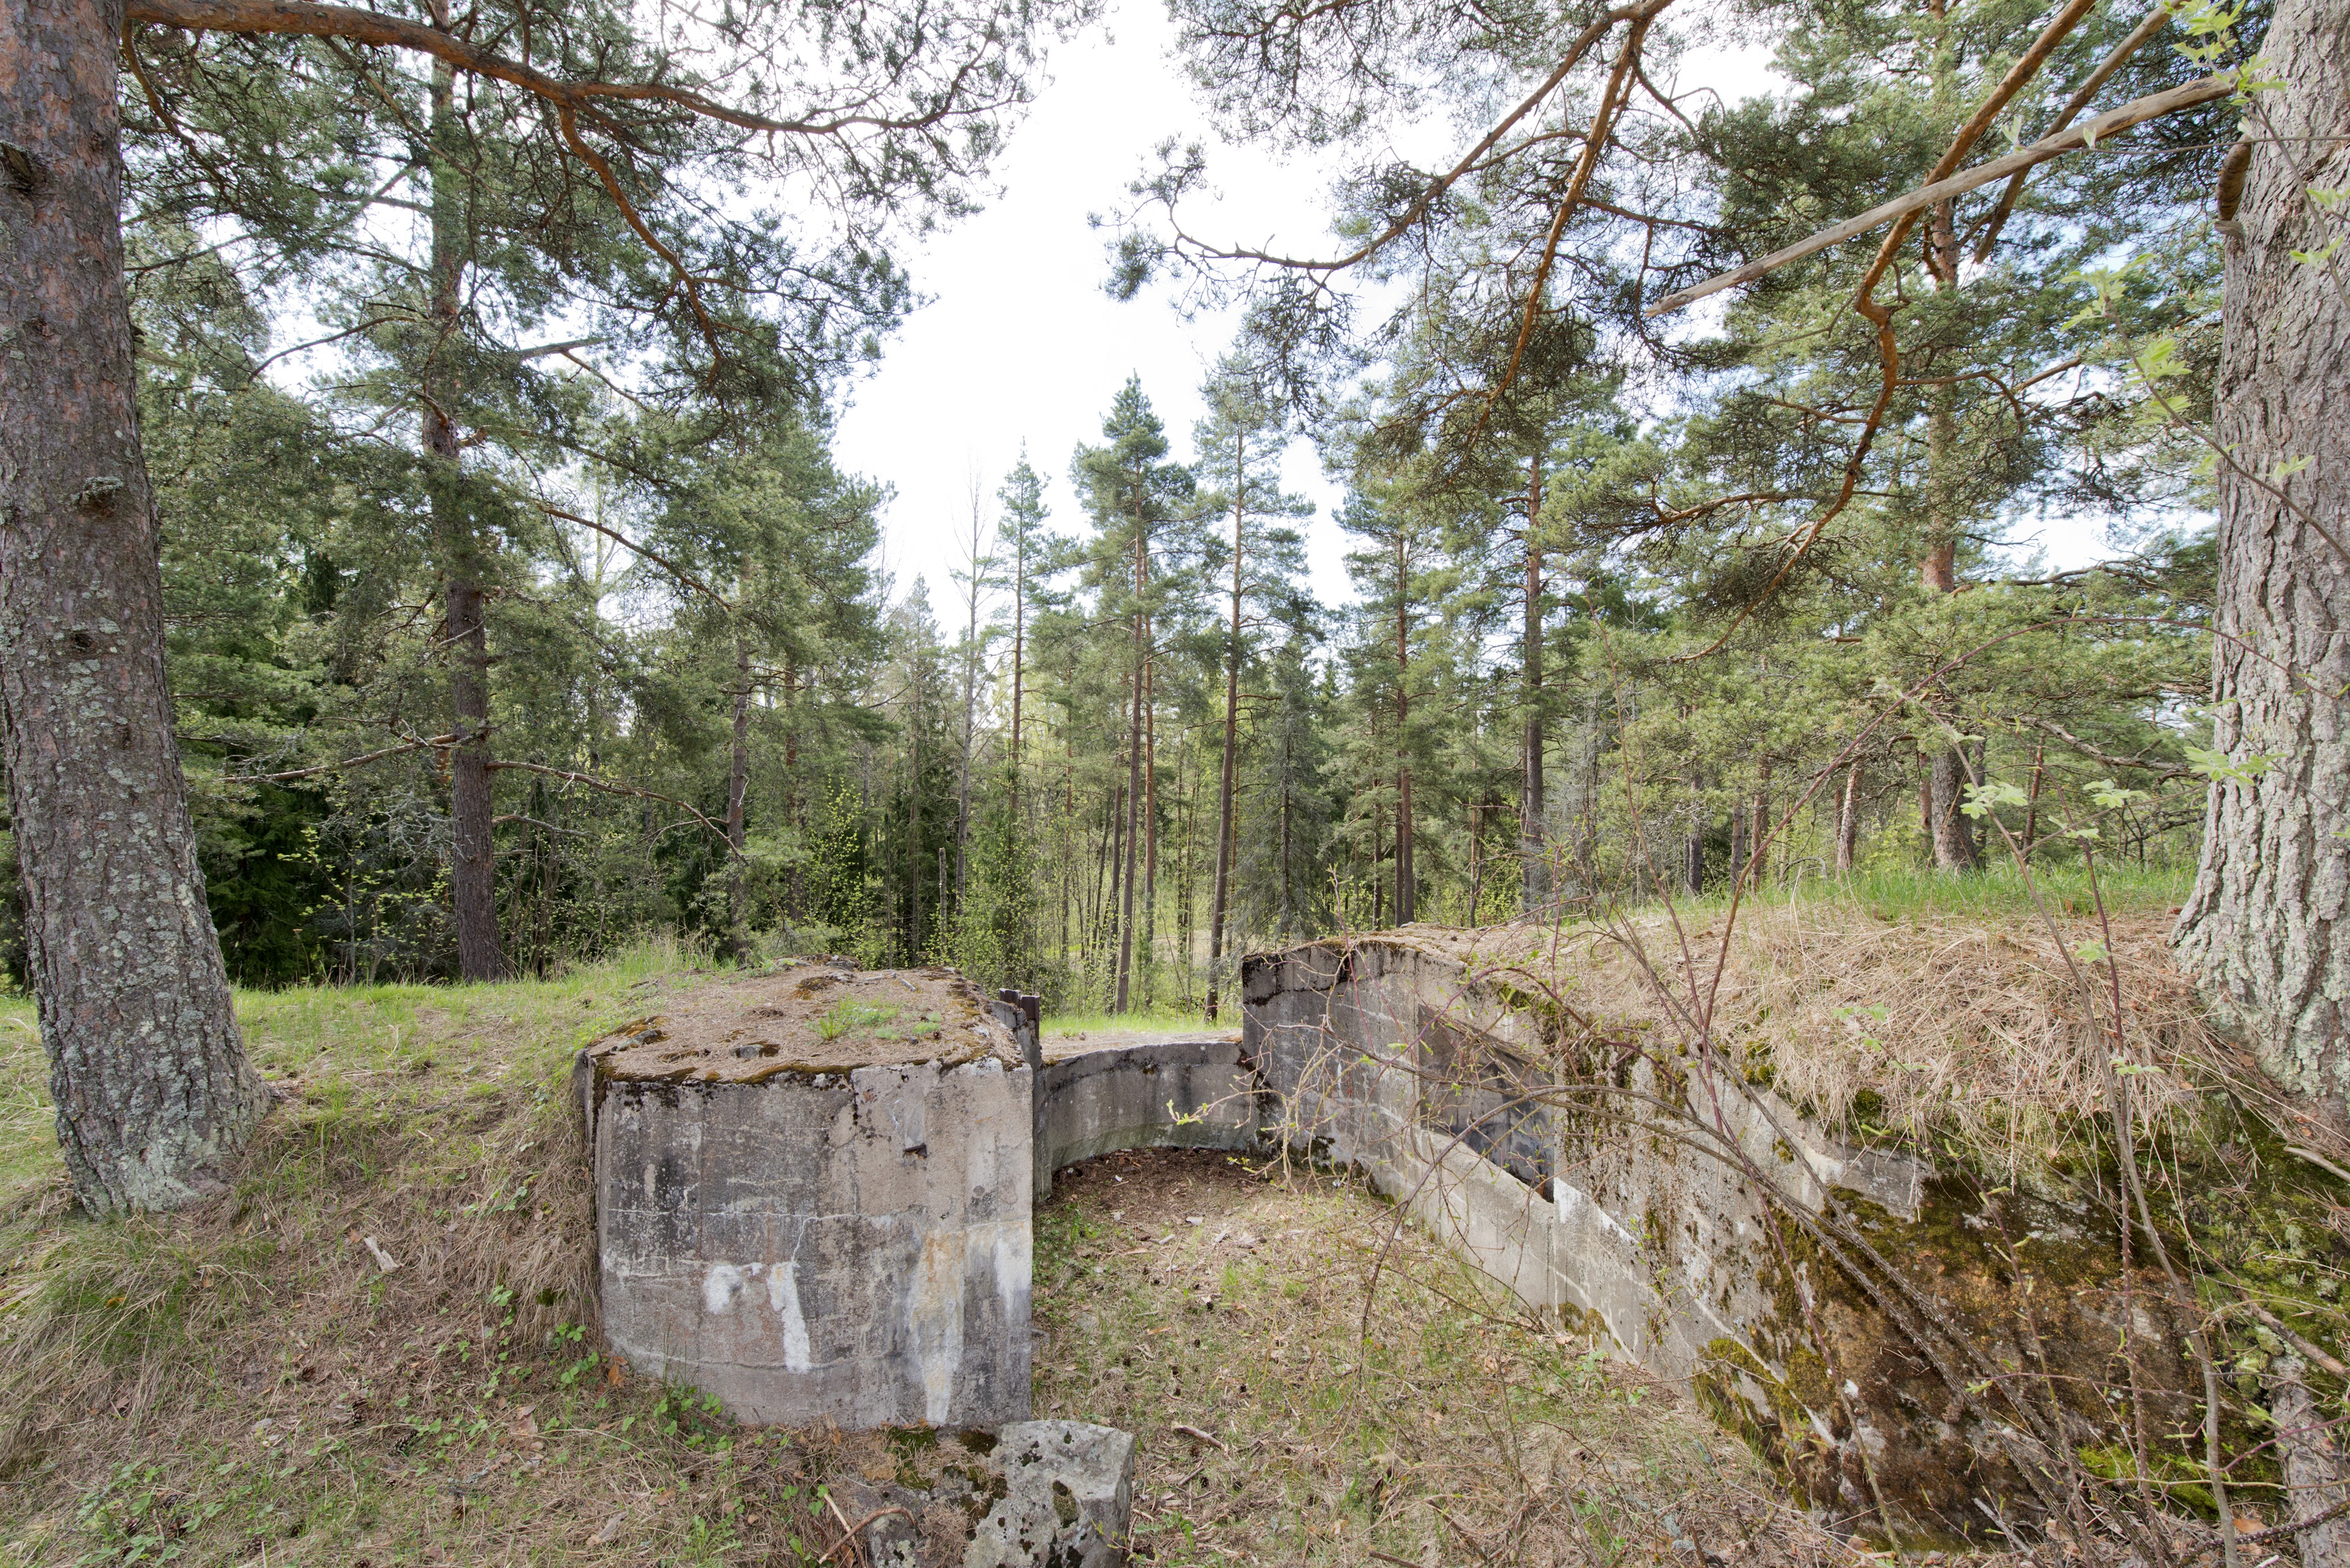 Laajalahti. Ensimmäisen maailmansodan aikainen maalinnoitus, puolustusasema XXXI:4 Laajalahdessa, Espoossa. Kuvassa on betonista rakennettu kaarevaseinäinen konekivääriasema. Aseman katto on jäänyt rakentamatta. Oikealla seinällä on konekiväärin jäähdytysvesisäiliötä varten tehty syvennys. Ampuma-aukon vasemmalla puolella näkyy aseman tukemiseen käytettyjä teräspalkkeja. Ampuma-aukon alapuolella puolestaan erottuu syvennys konekiväärin jaloille. Aseman pohjalla kasvaa ruohoa. Ympäristö on mäntyvaltaista havupuumetsää.